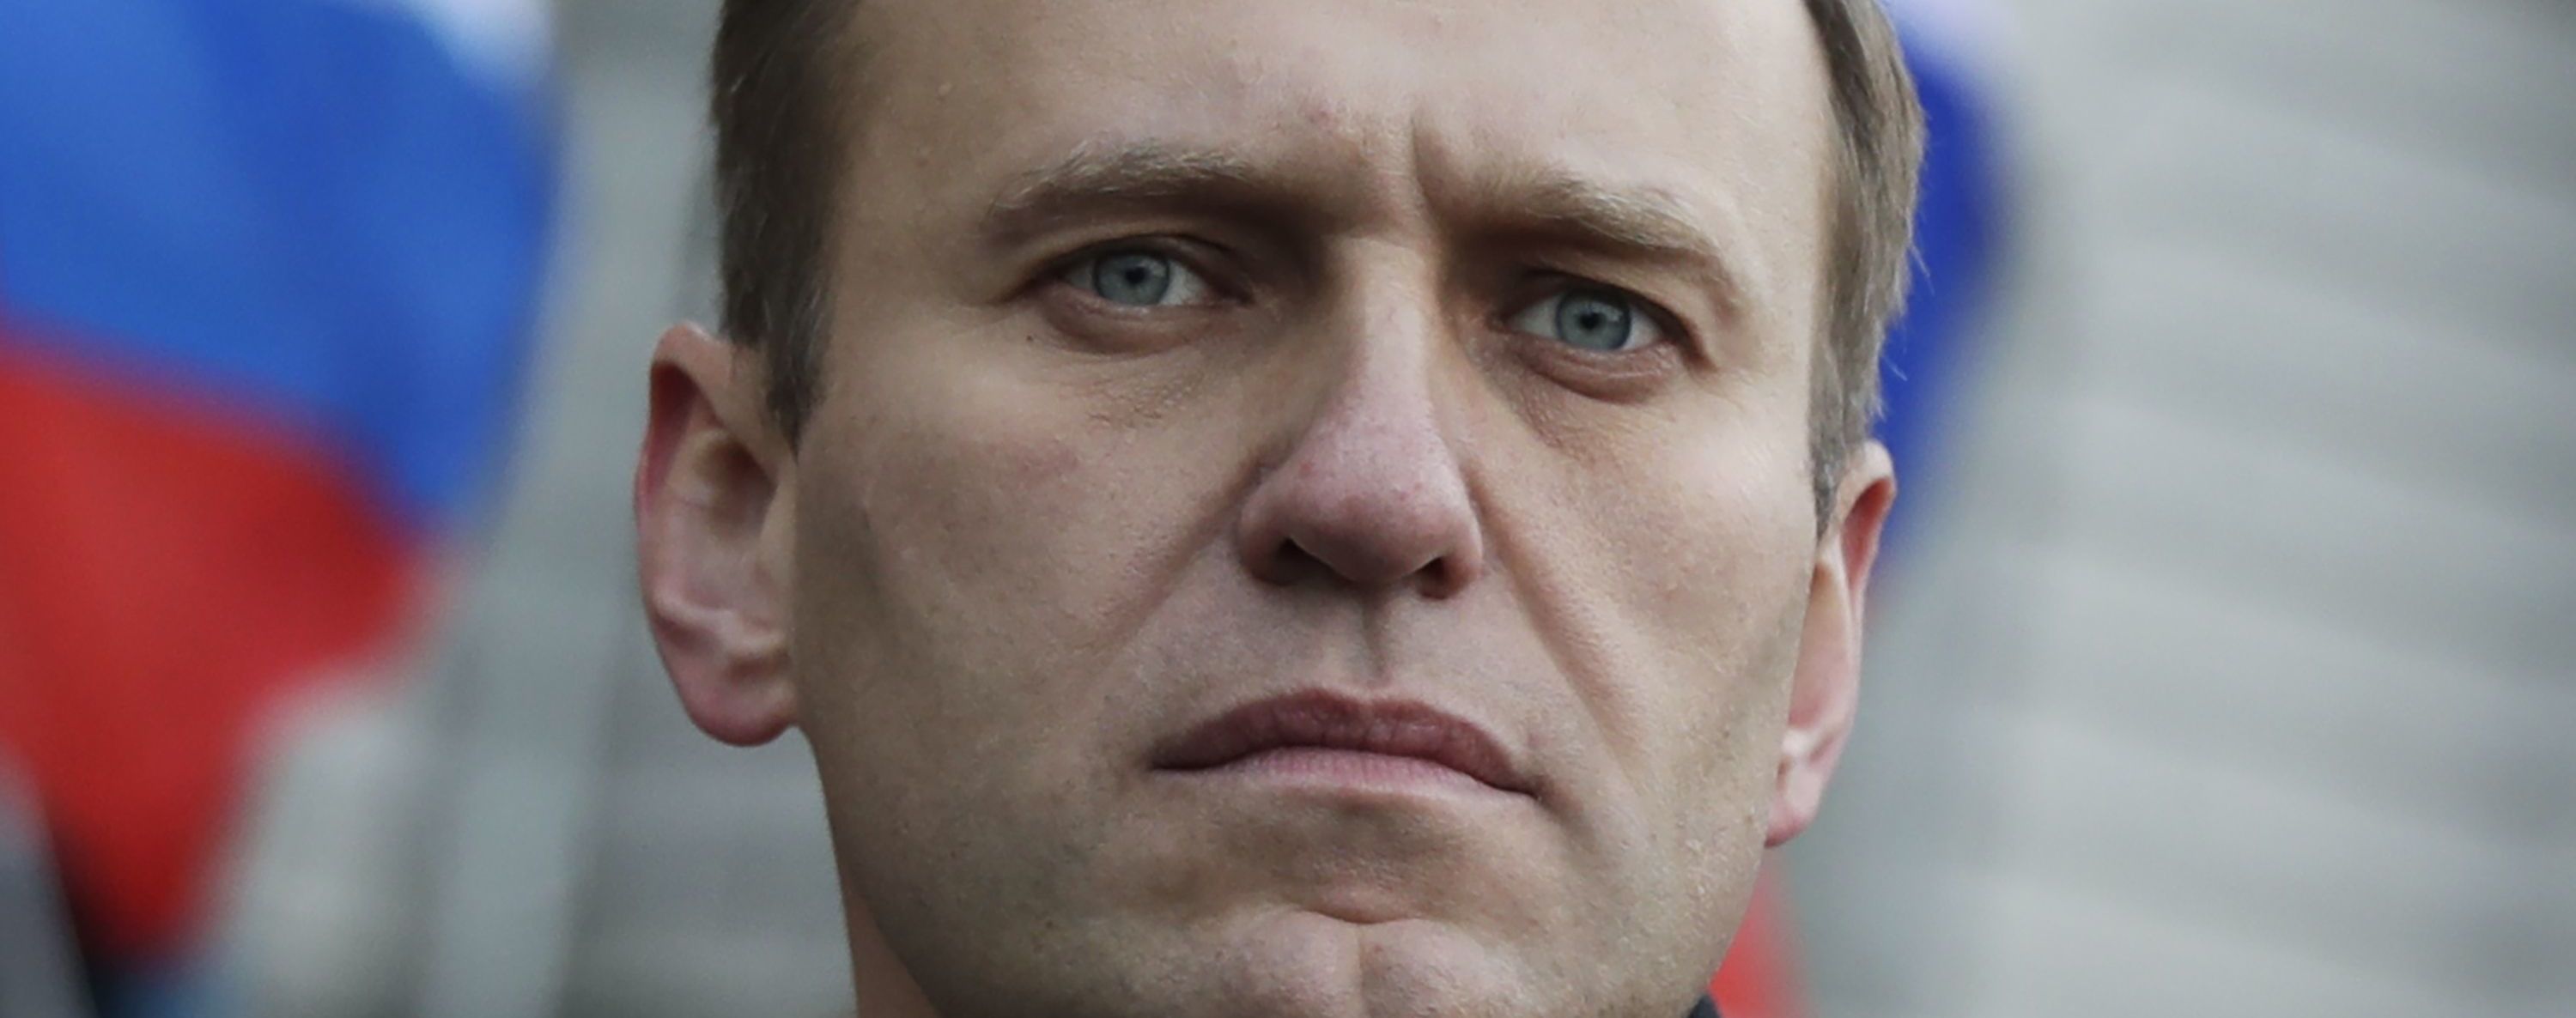 "Важное доказательство": Навальный в своем блоге требует вернуть одежду, в которой его госпитализировали в Омске